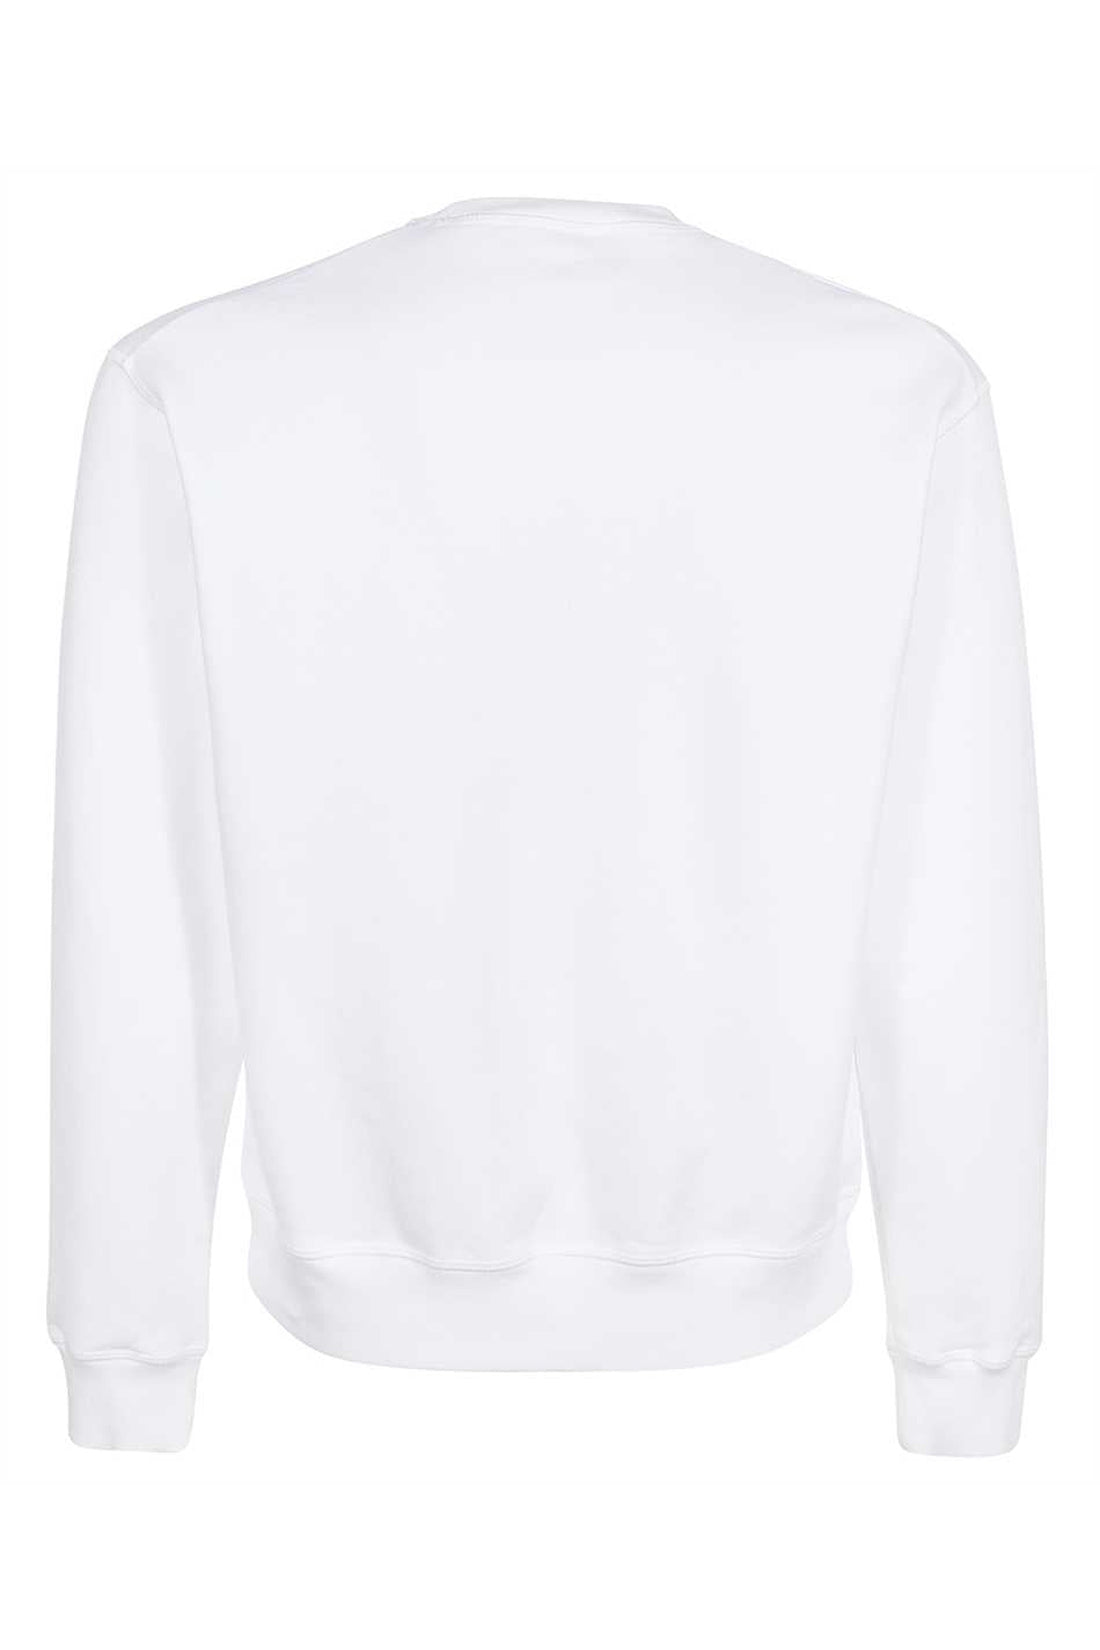 Dsquared2-OUTLET-SALE-Printed cotton sweatshirt-ARCHIVIST